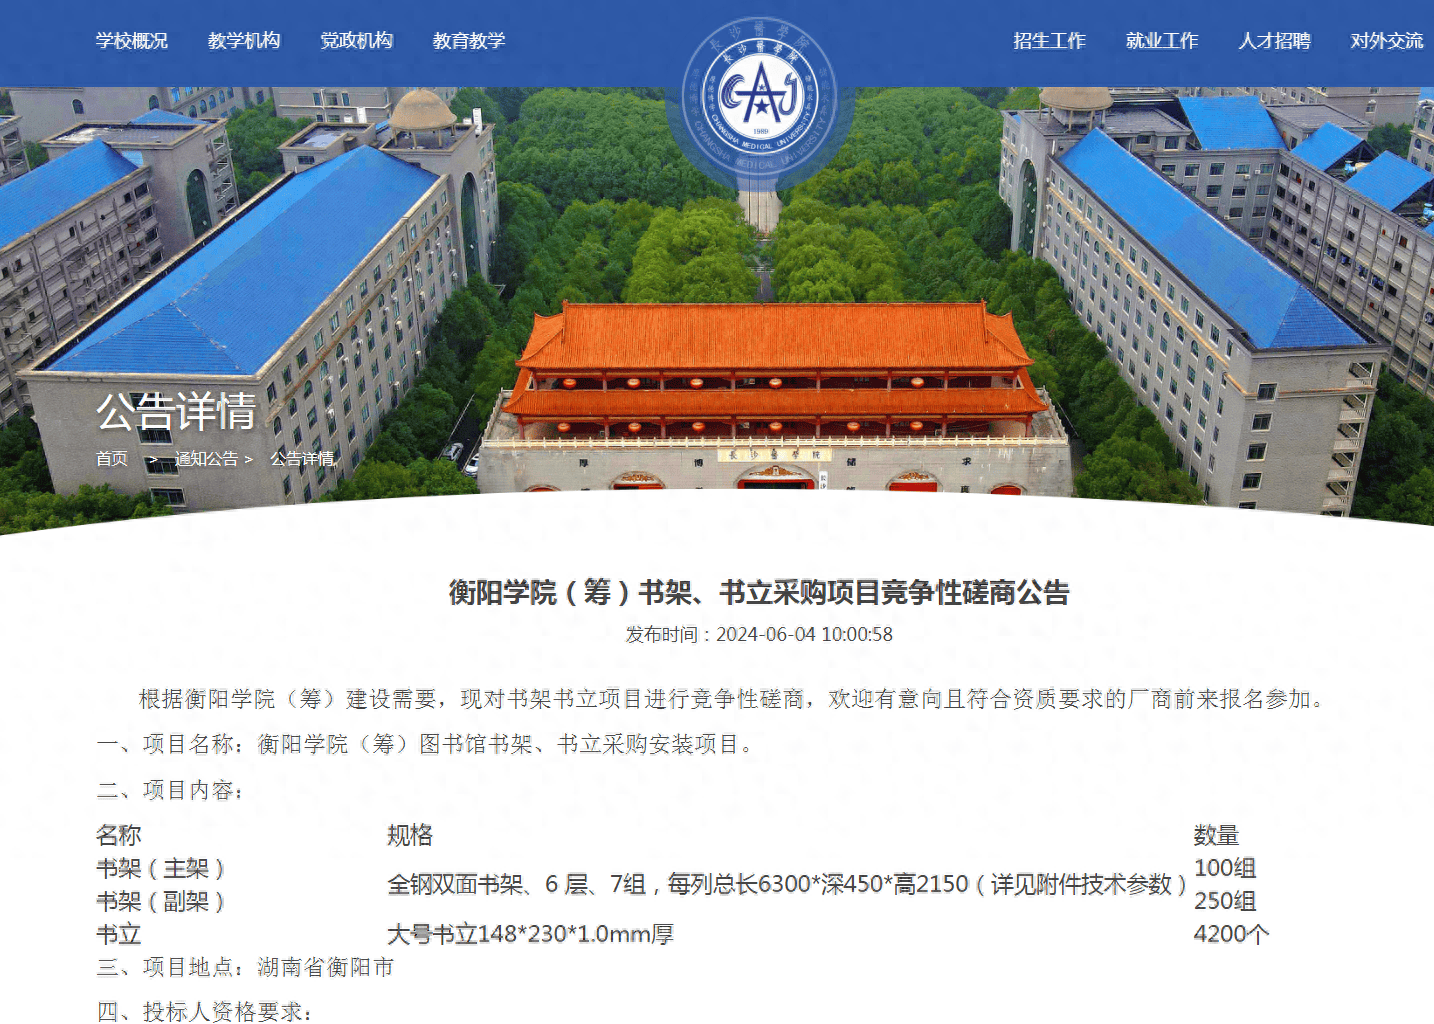 重磅!湖南科技师范学院更名为衡阳学院,官方首次对外使用新校名